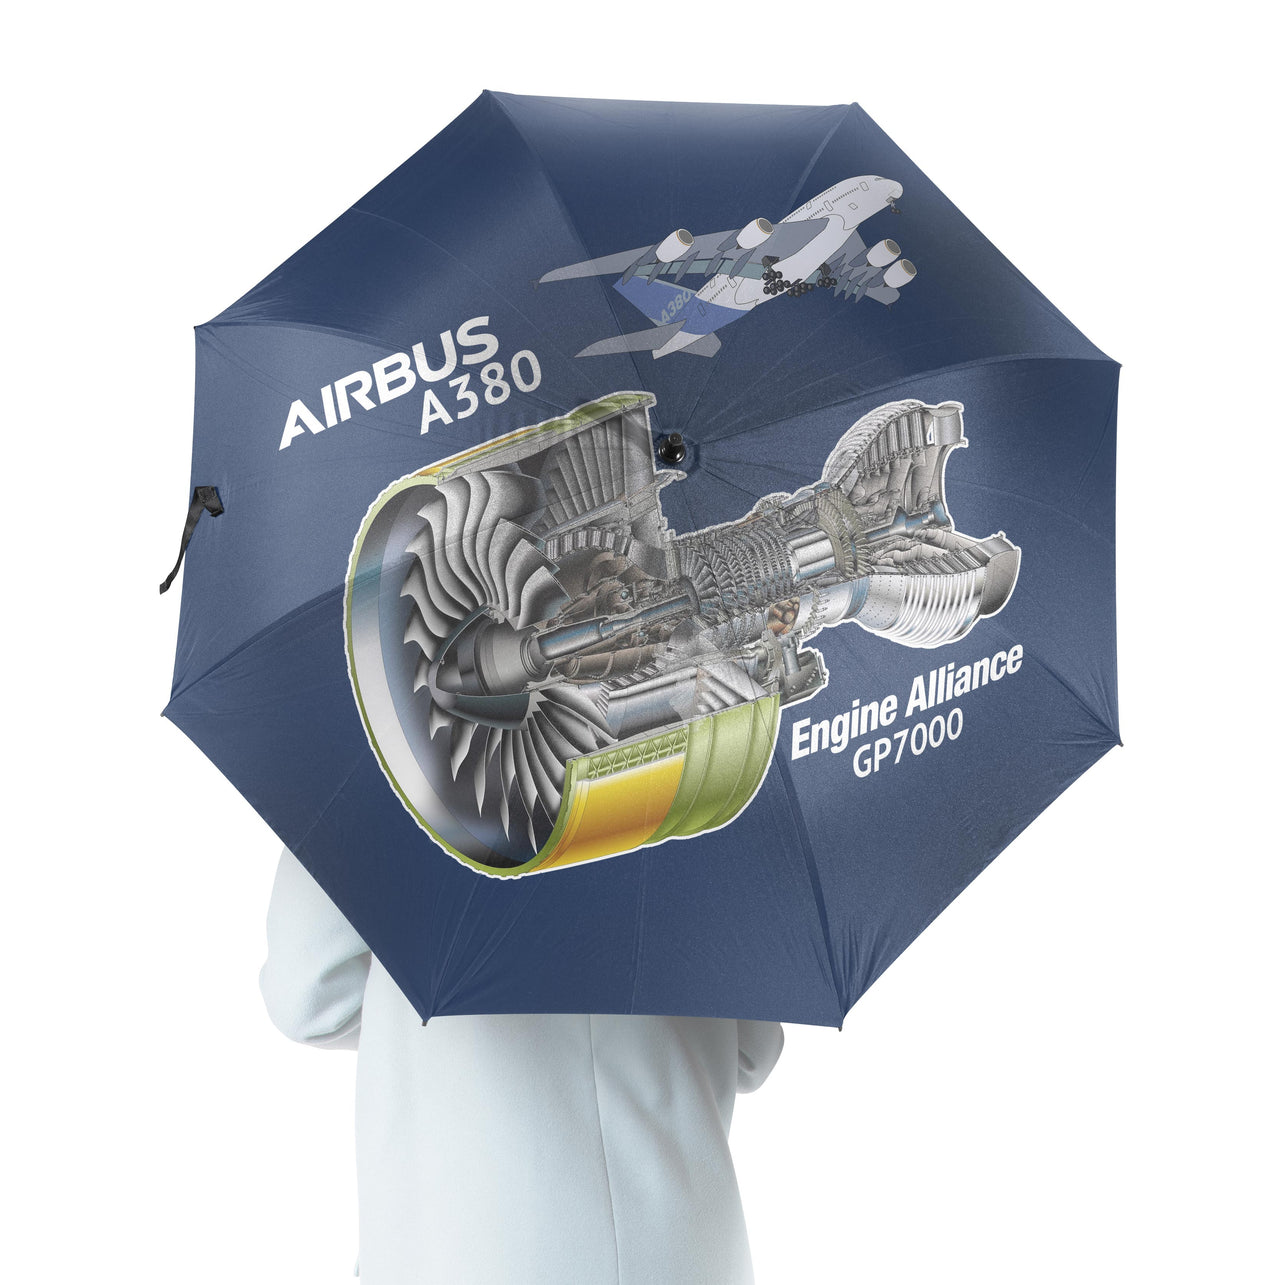 Airbus A380 & GP7000 Engine Designed Umbrella